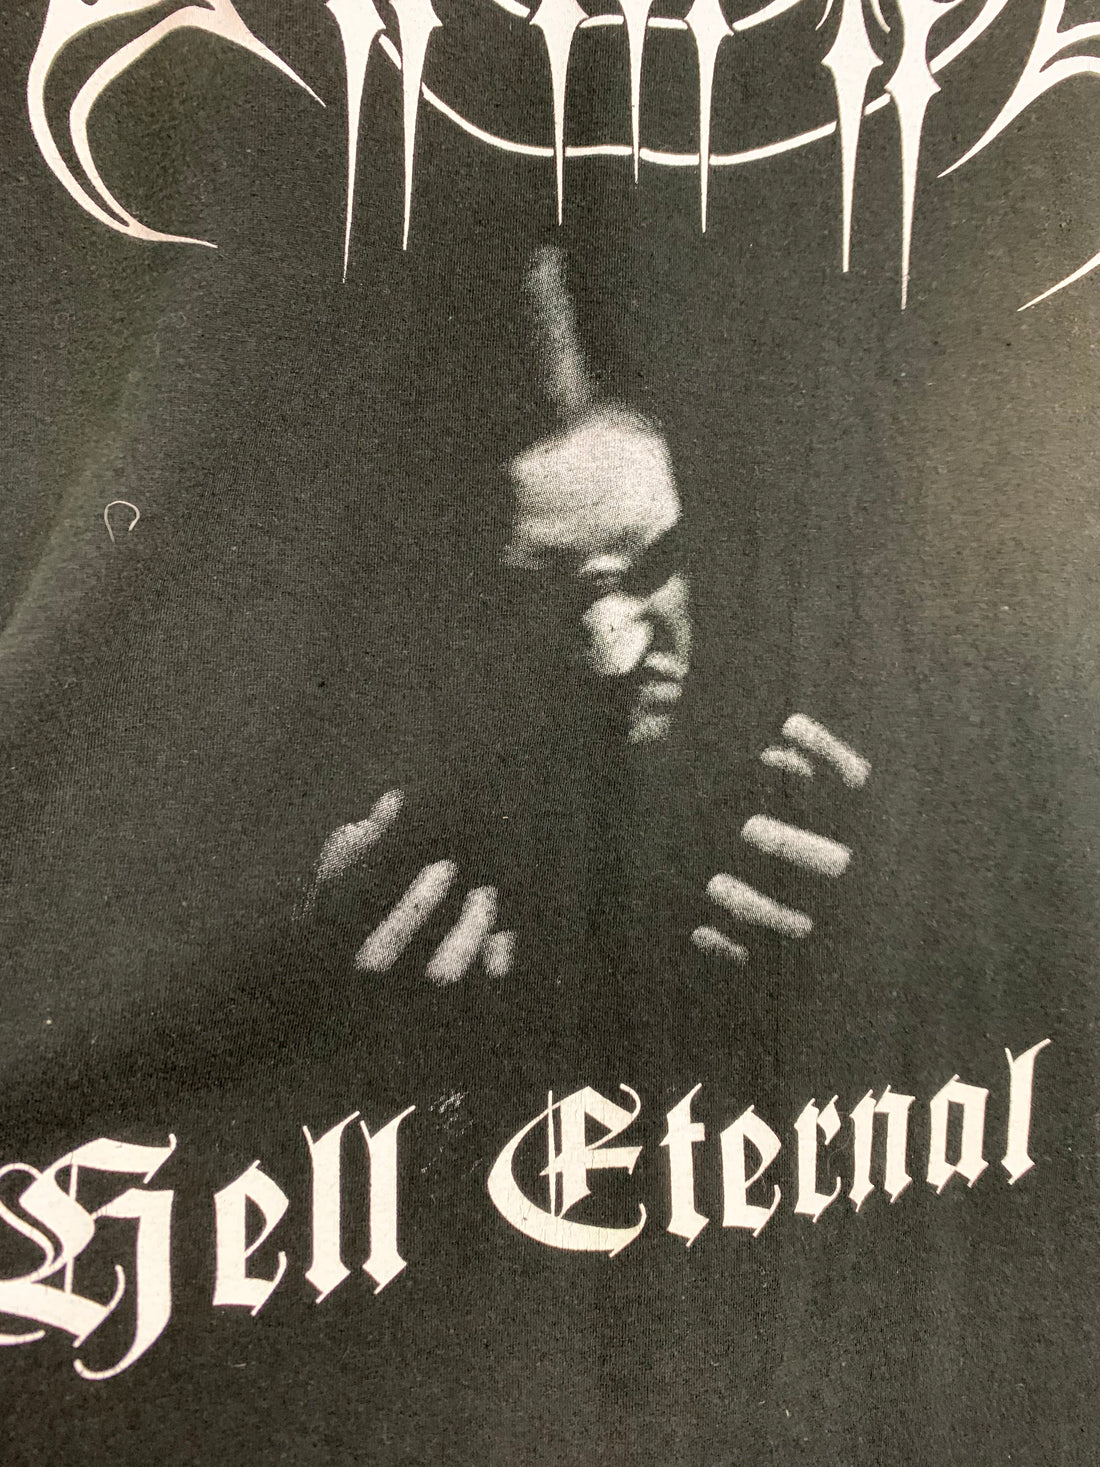 Setherial 1999 Hell Eternal Vintage Longsleeve